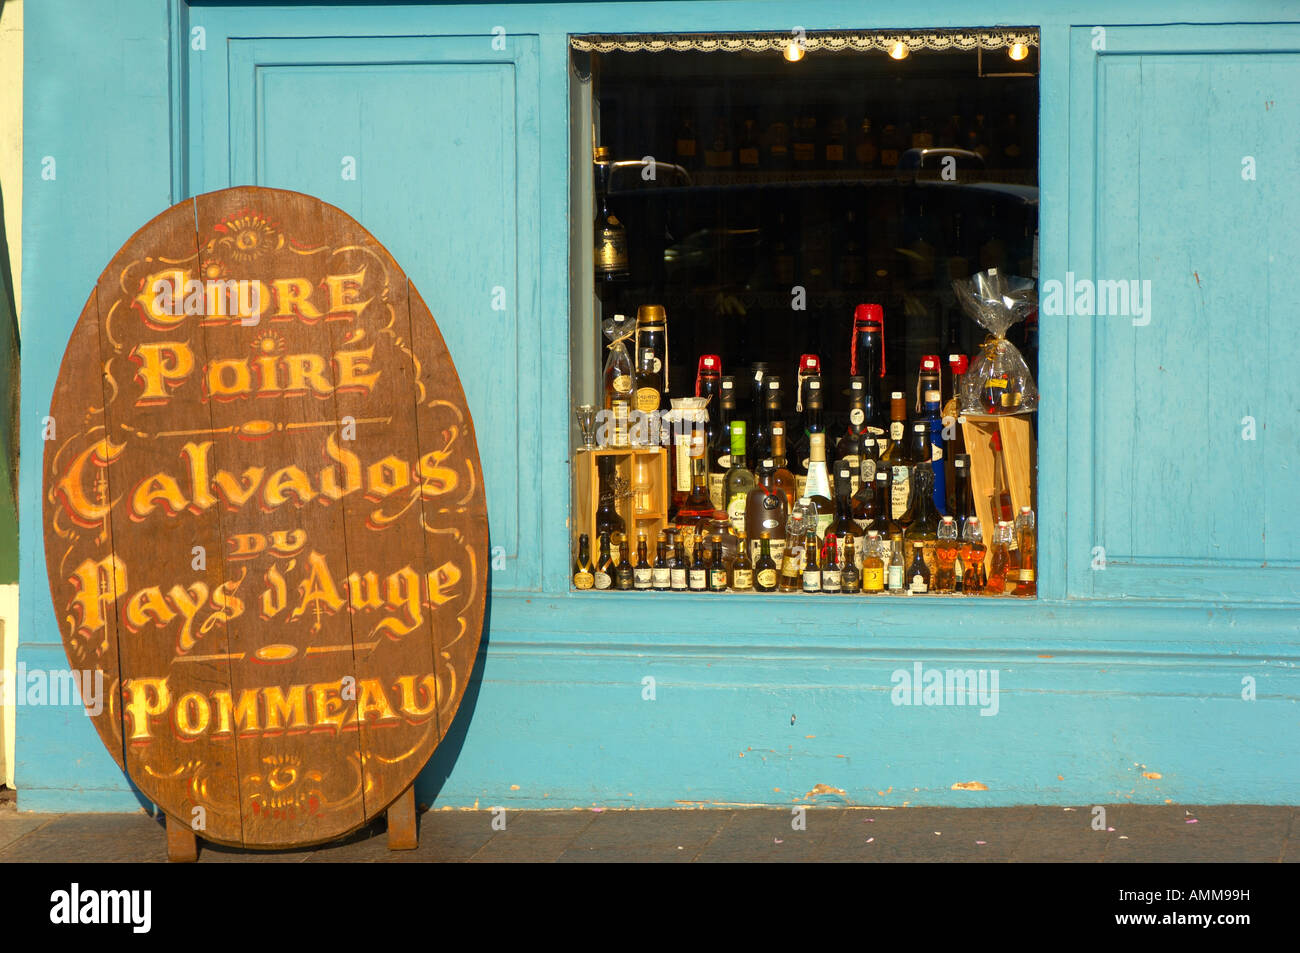 Hafen Seite Shop Verkauf Normandie Getränke, Calvados, Cidre. Honfleur Normandie Frankreich Stockfoto